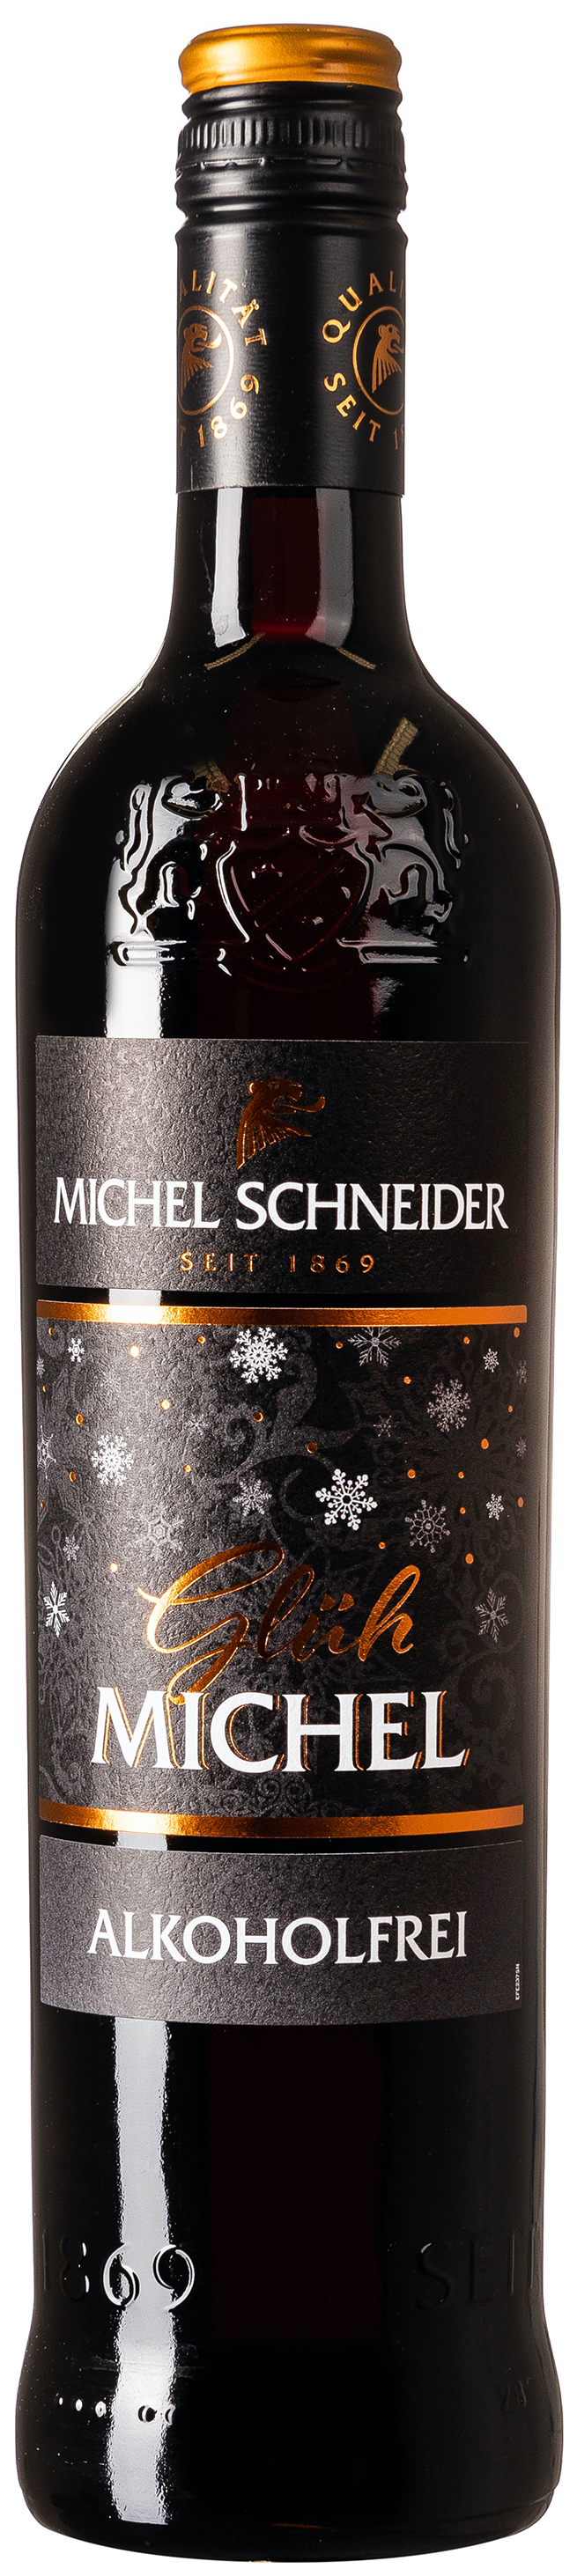 Michel Schneider Glüh Michel Rot Alkoholfrei 0,5% vol. 0,75L 